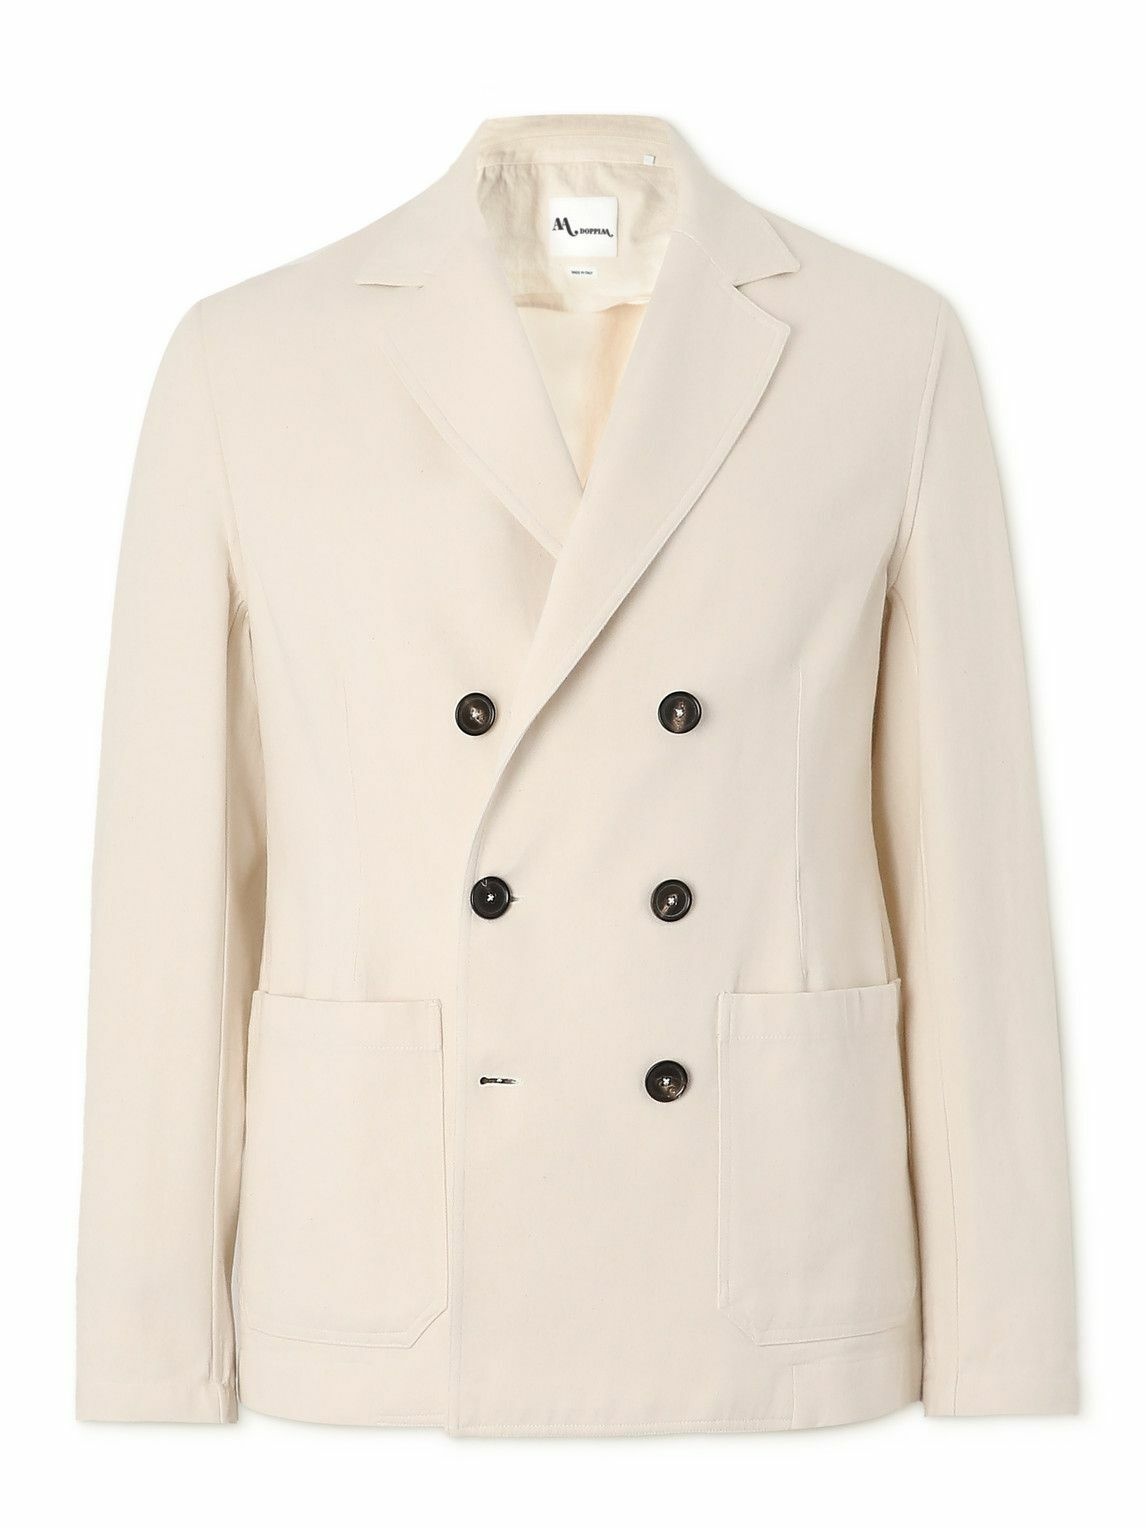 DOPPIAA - Double-Breasted Cotton-Twill Suit Jacket - Neutrals DOPPIAA